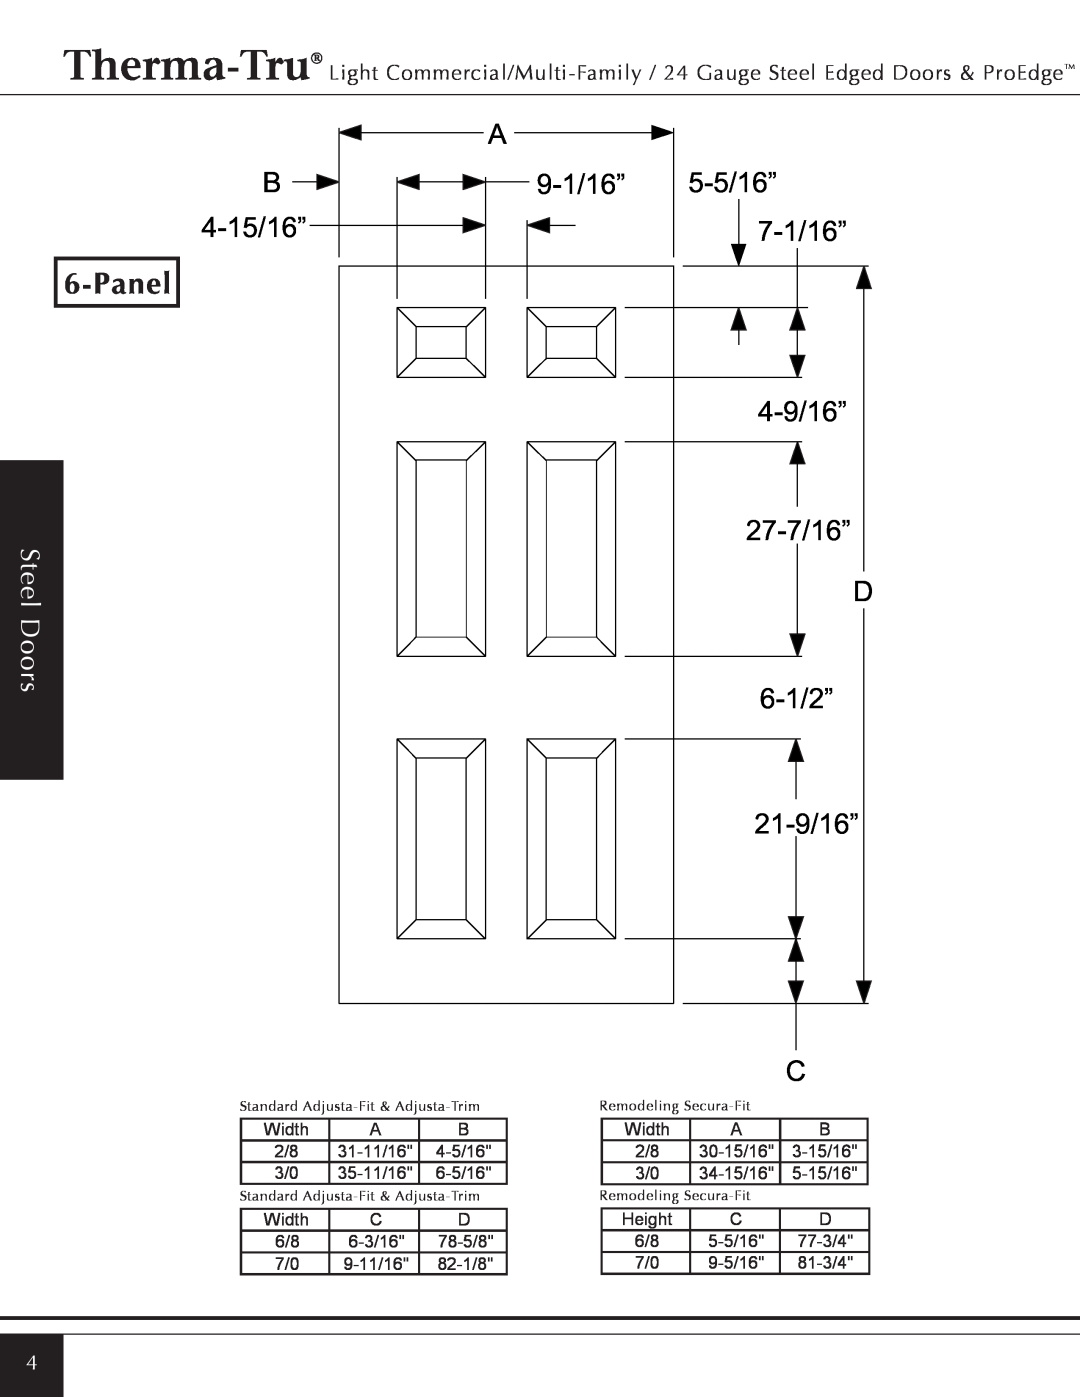 Therma-Tru Light Commercial/Multi-Family / 22 & 24 Gauge Steel Edged Door Panel, B 4-15/16”, 6-1/2”, 21-9/16”, Steel Doors 